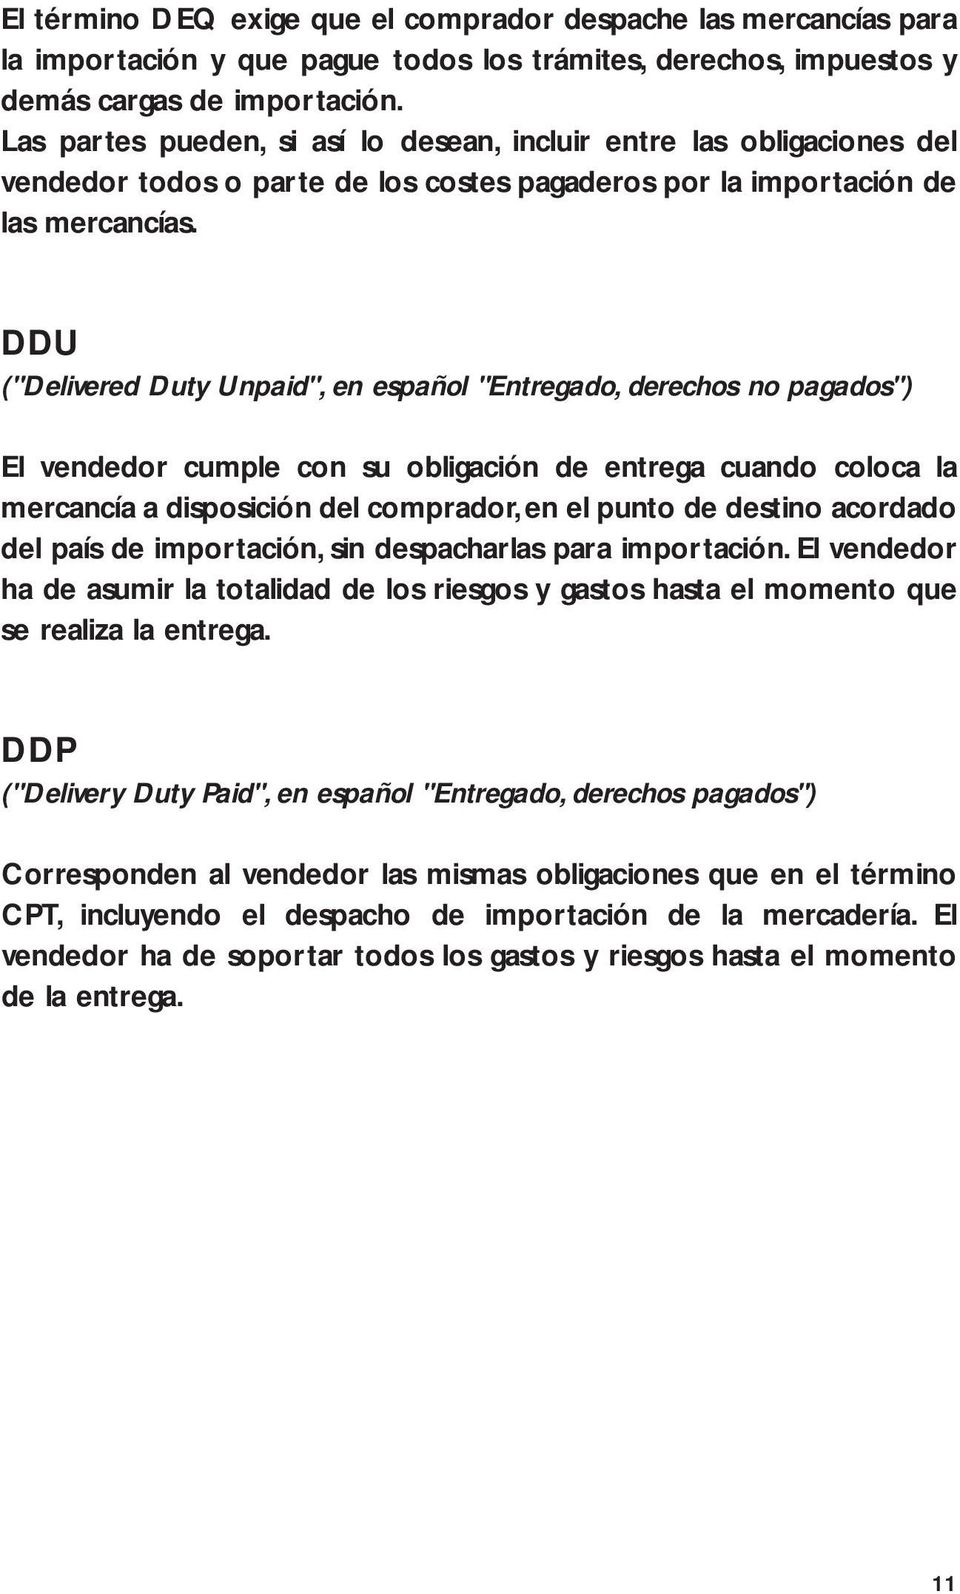 DDU ("Delivered Duty Unpaid", en español "Entregado, derechos no pagados") El vendedor cumple con su obligación de entrega cuando coloca la mercancía a disposición del comprador, en el punto de